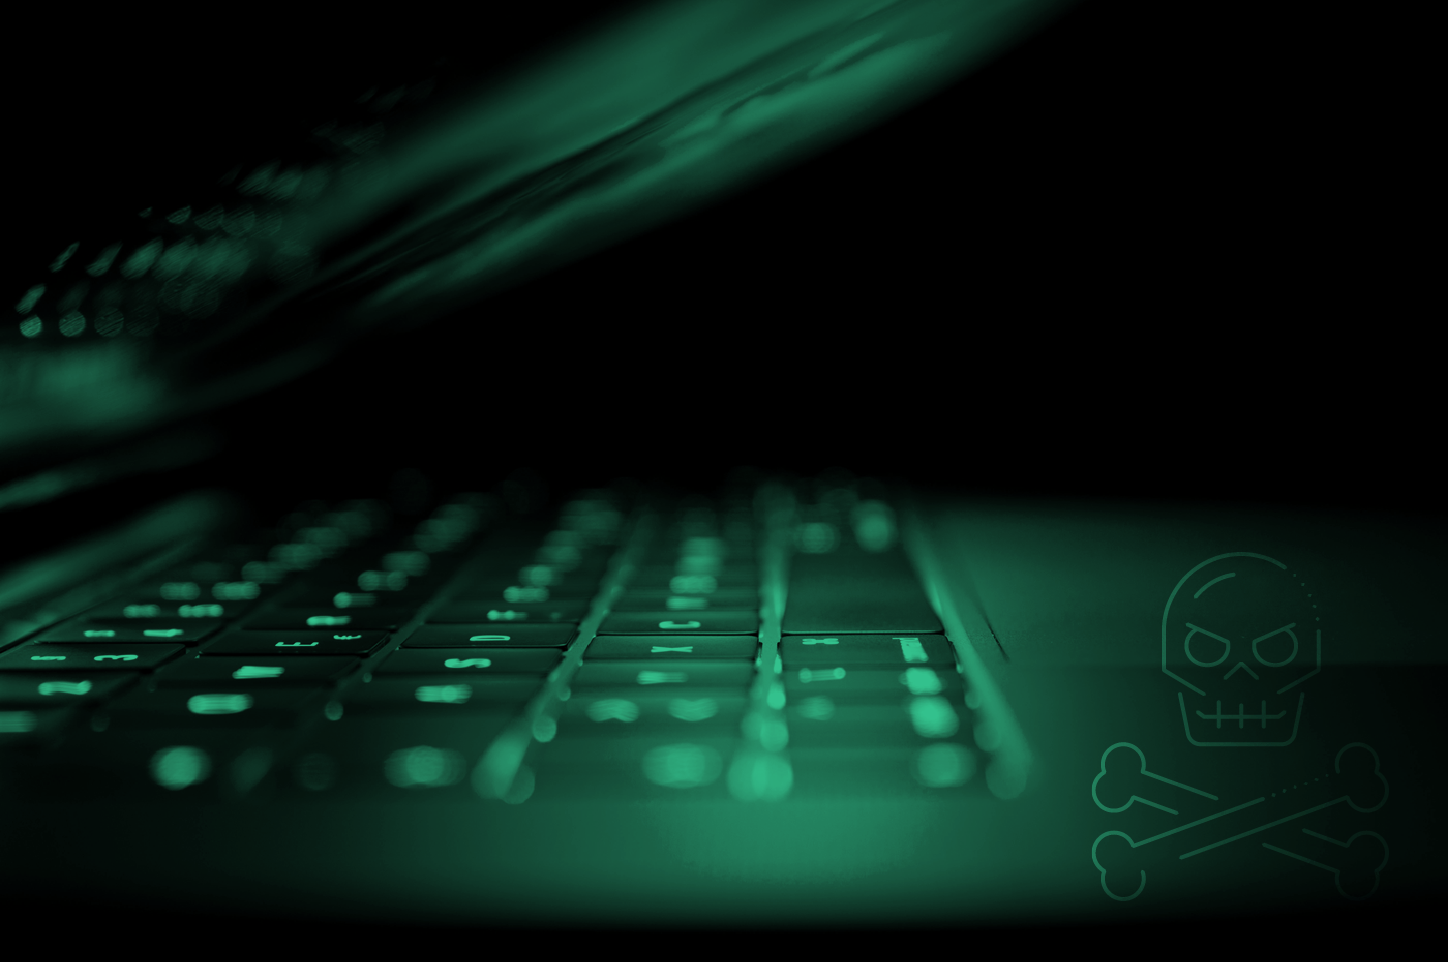 Tastatur in dunkelgrünem Licht und einem Totenkopf